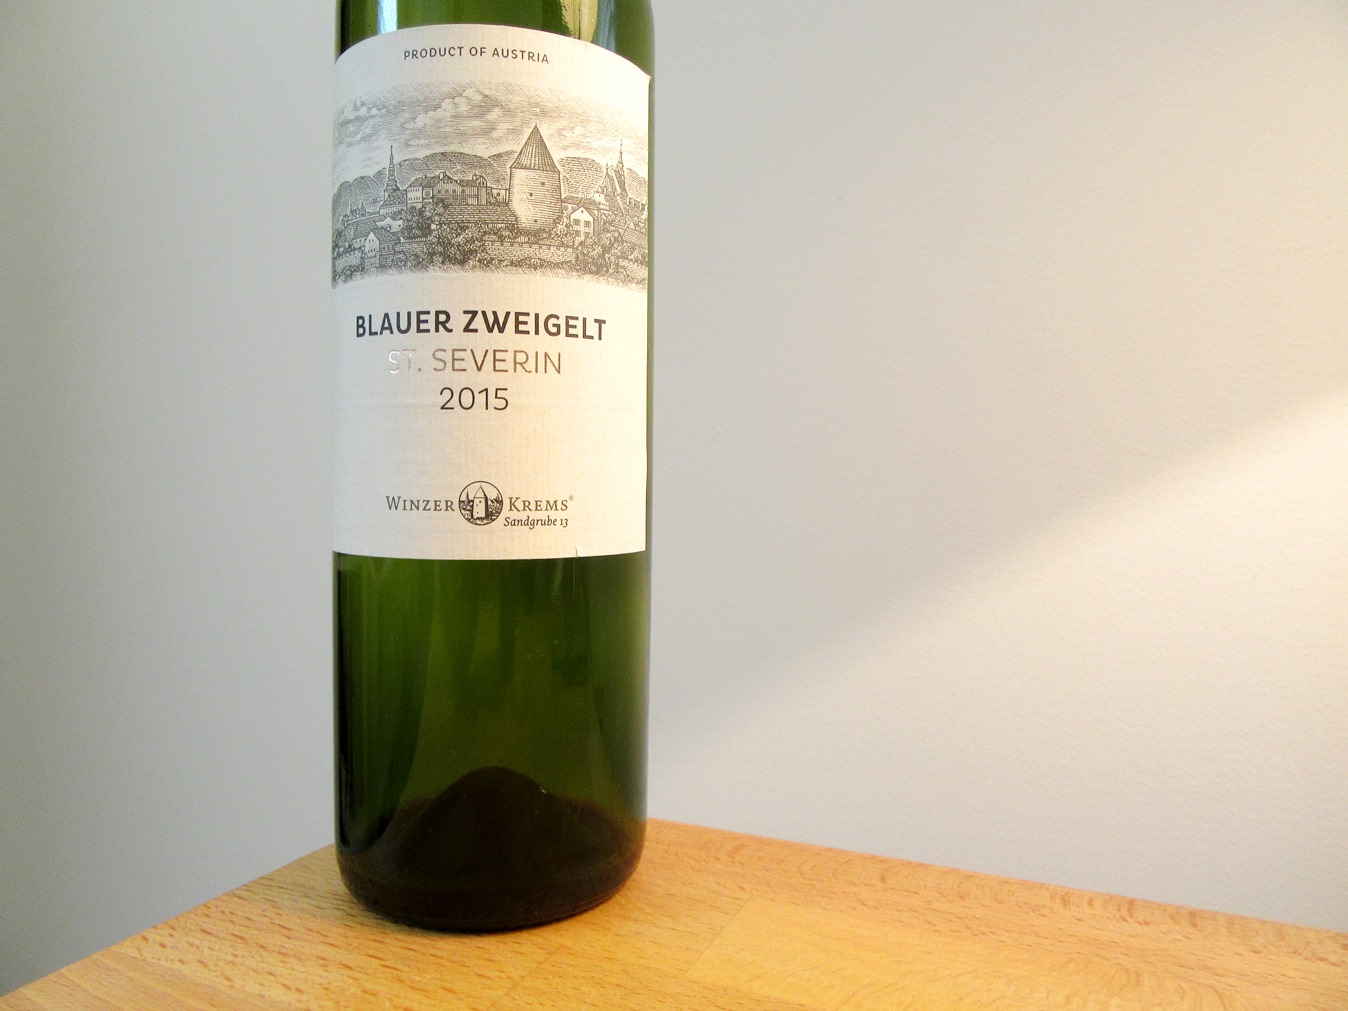 Winzer Krems, St. Severin Blauer Zweigelt 2015, Niederösterreich, Austria, Wine Casual